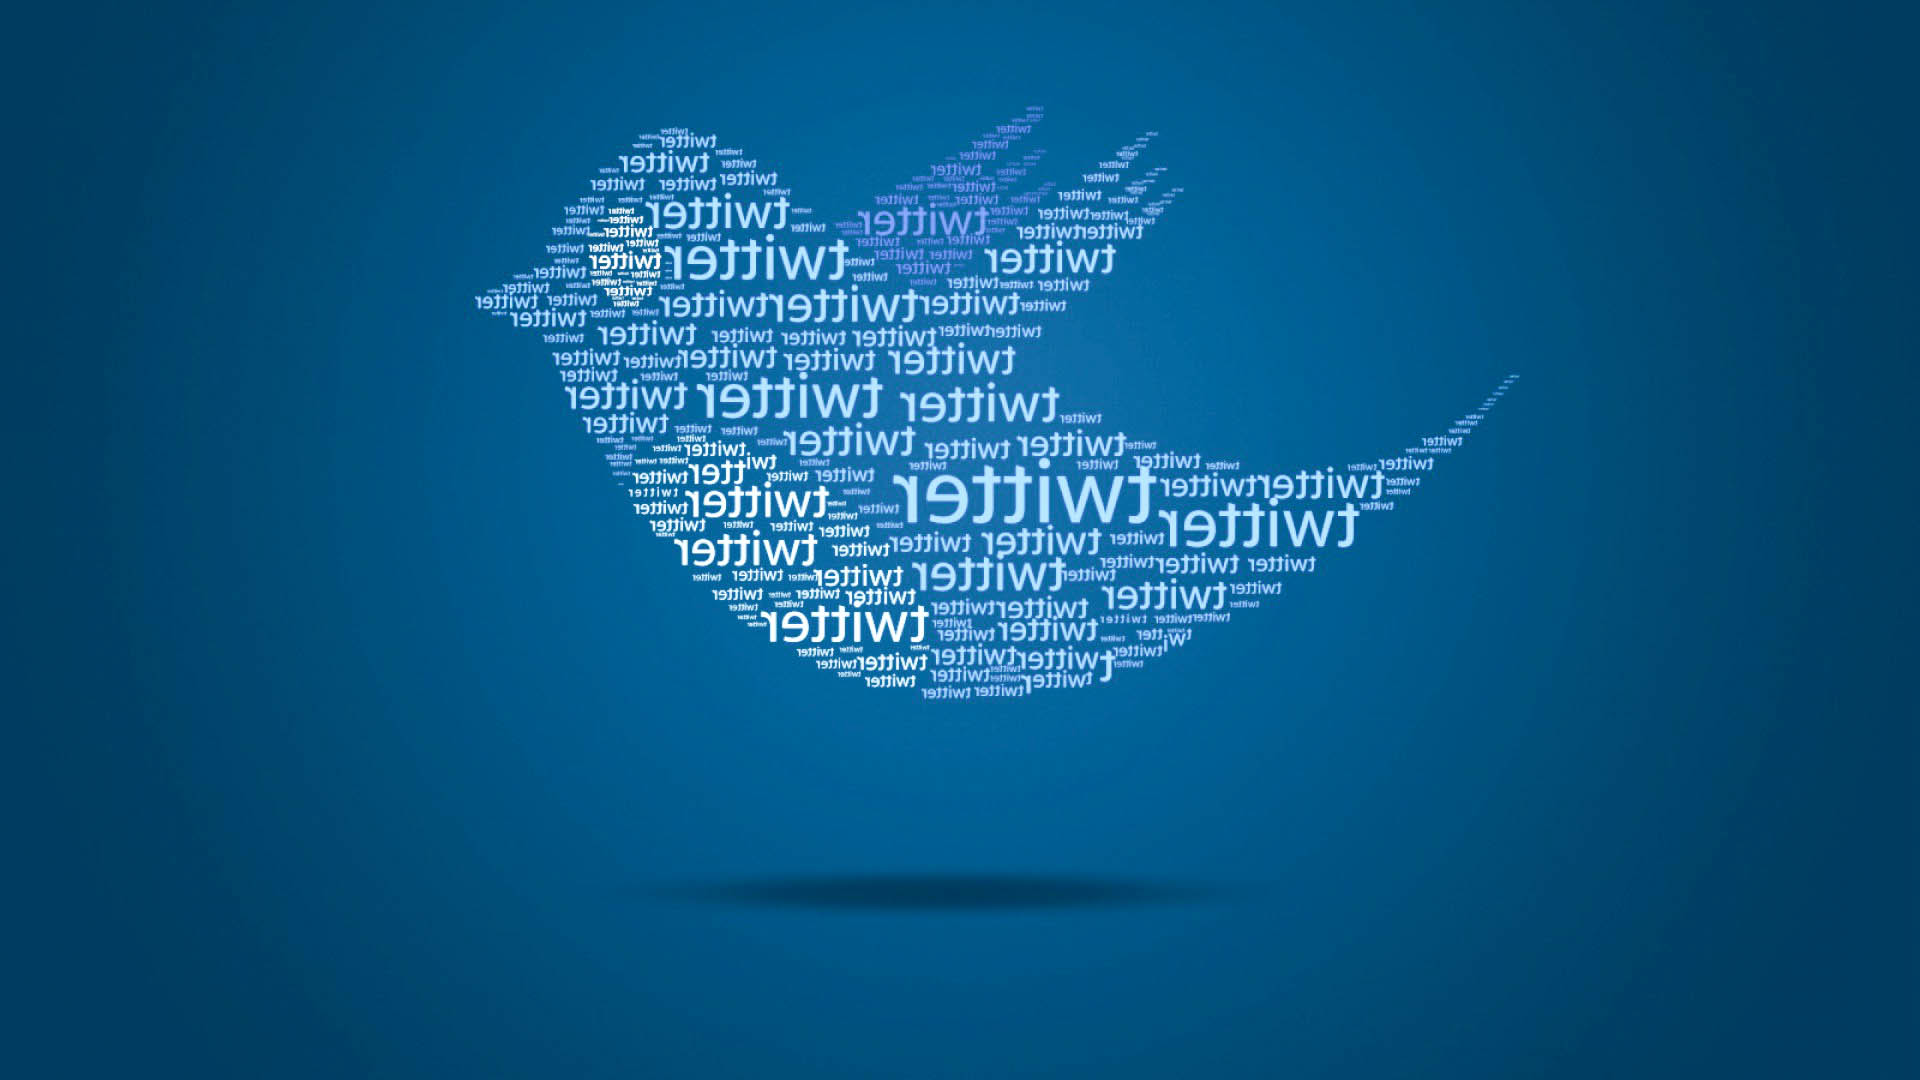 2023年twitter敏感内容怎么设置可见?twitter上有18+内容吗